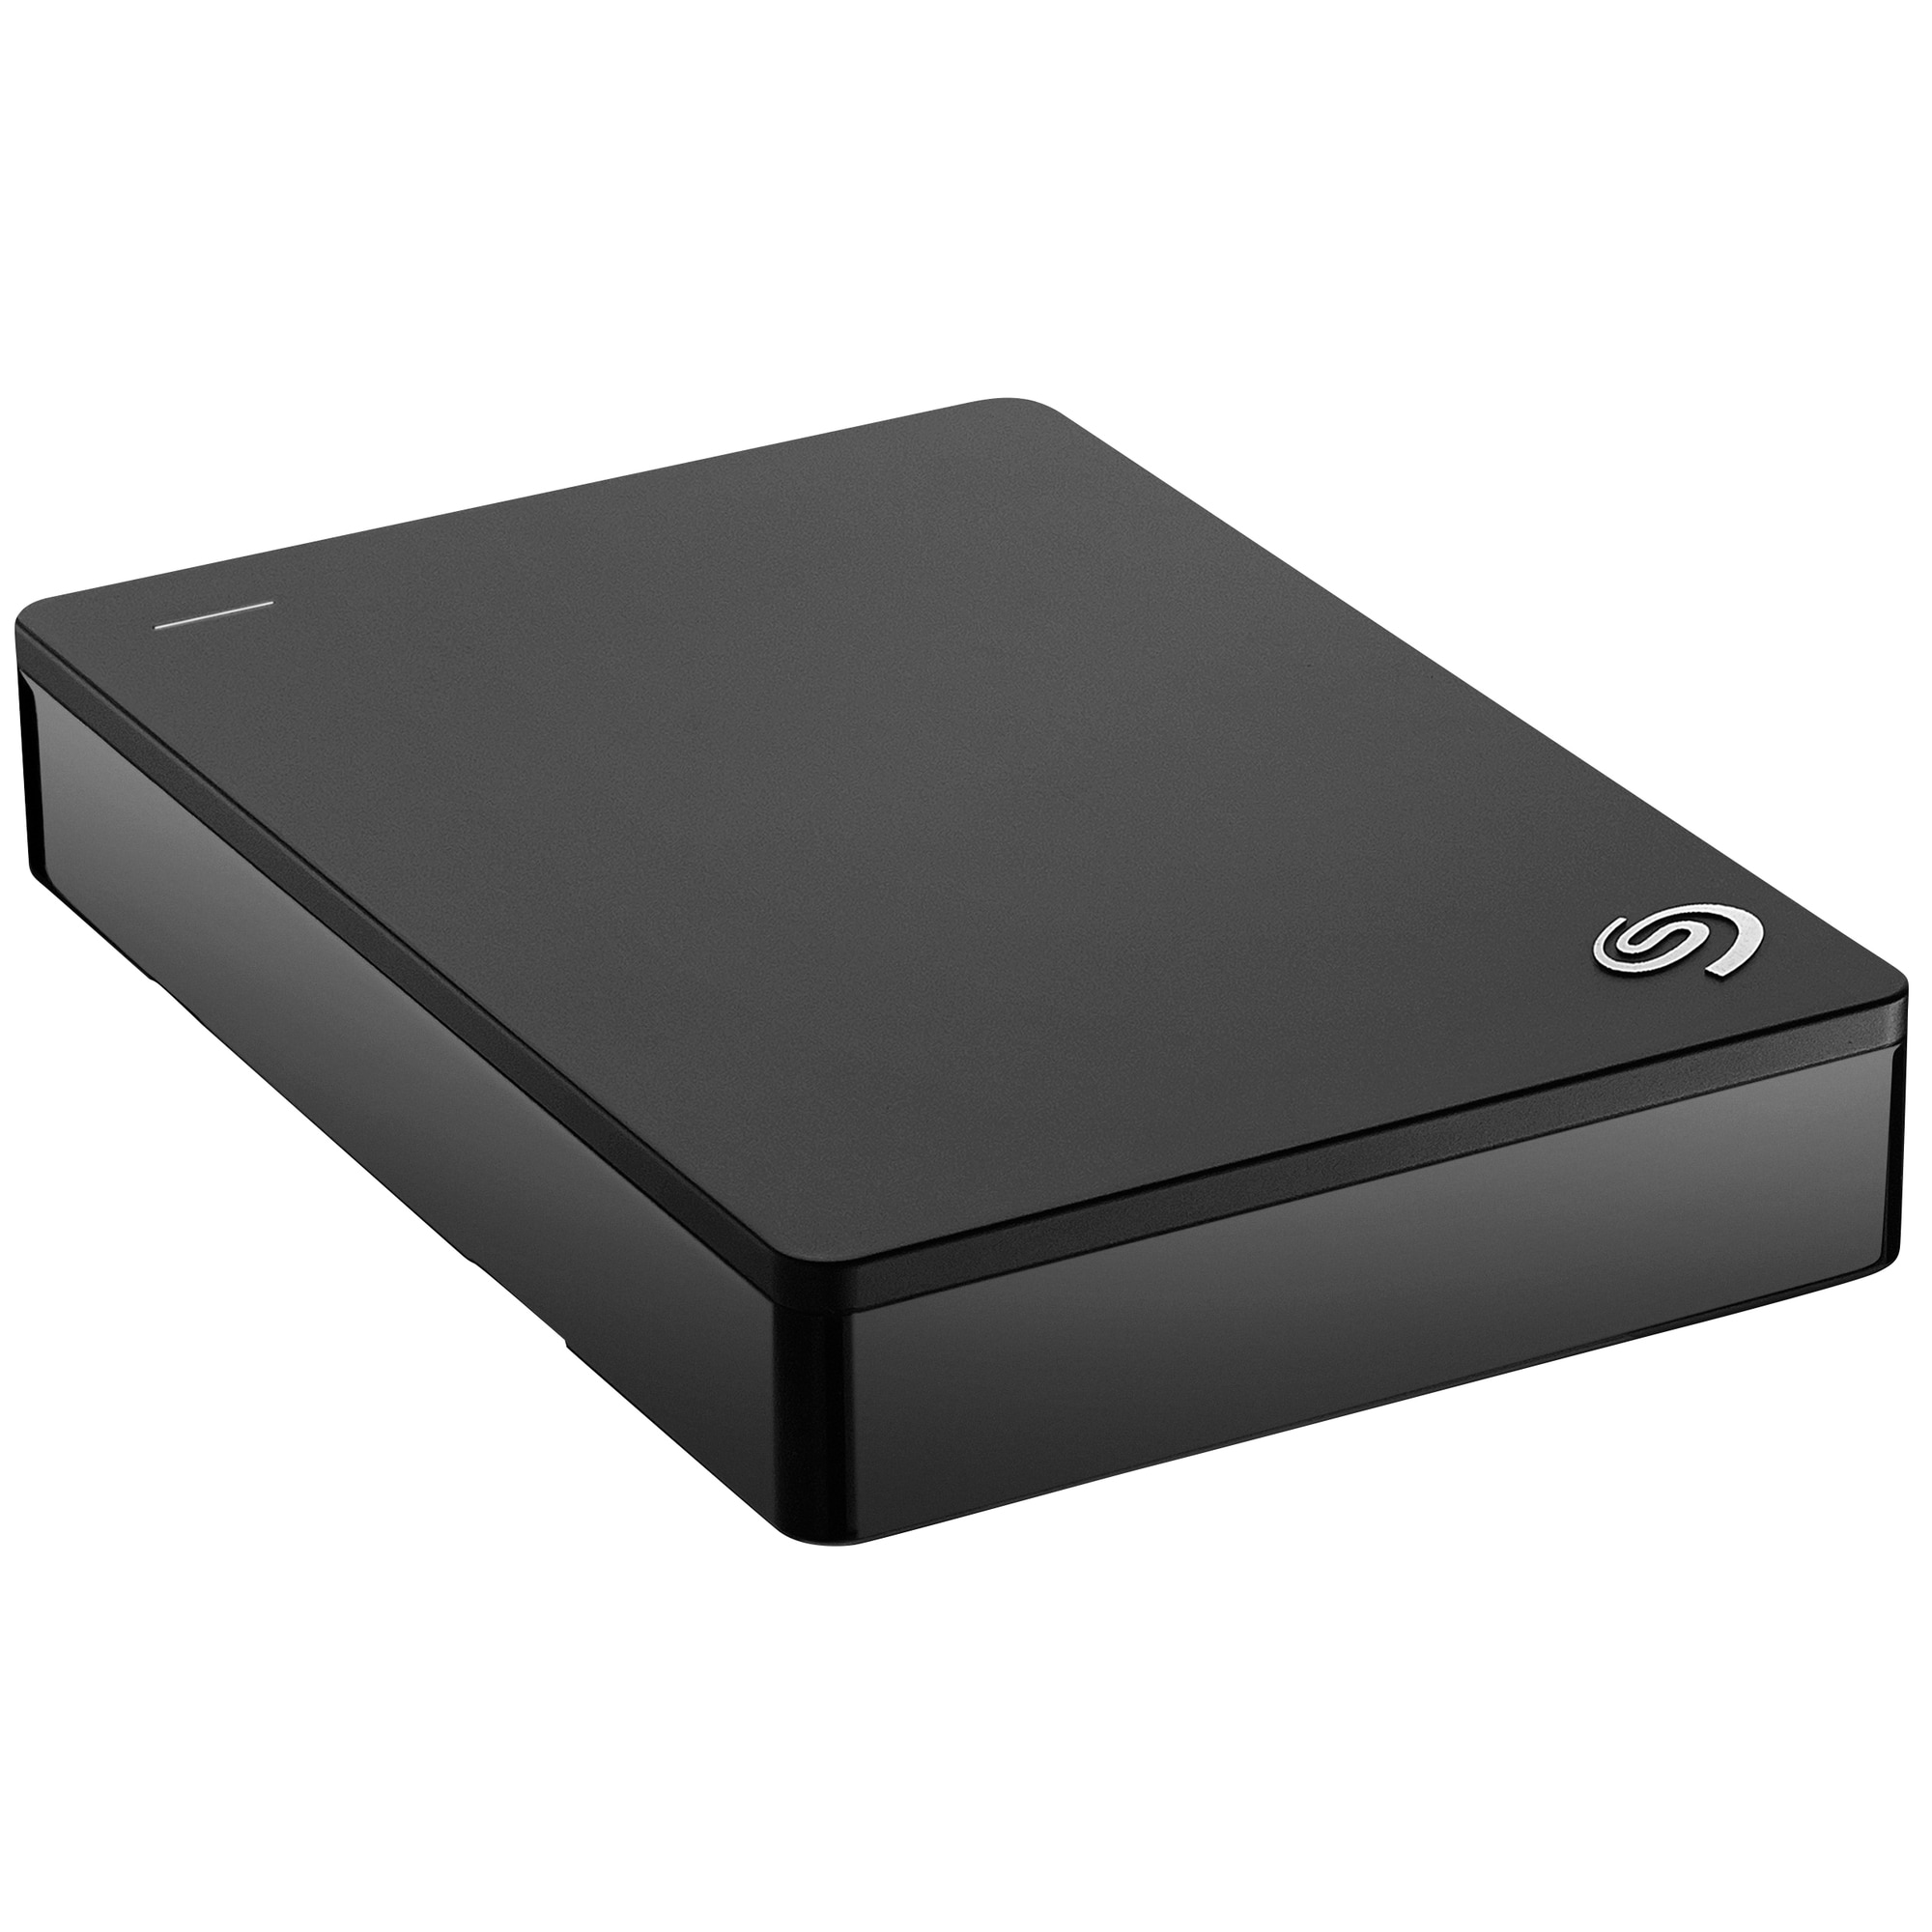 Seagate Backup Plus 5 TB harddisk - sort | Elgiganten